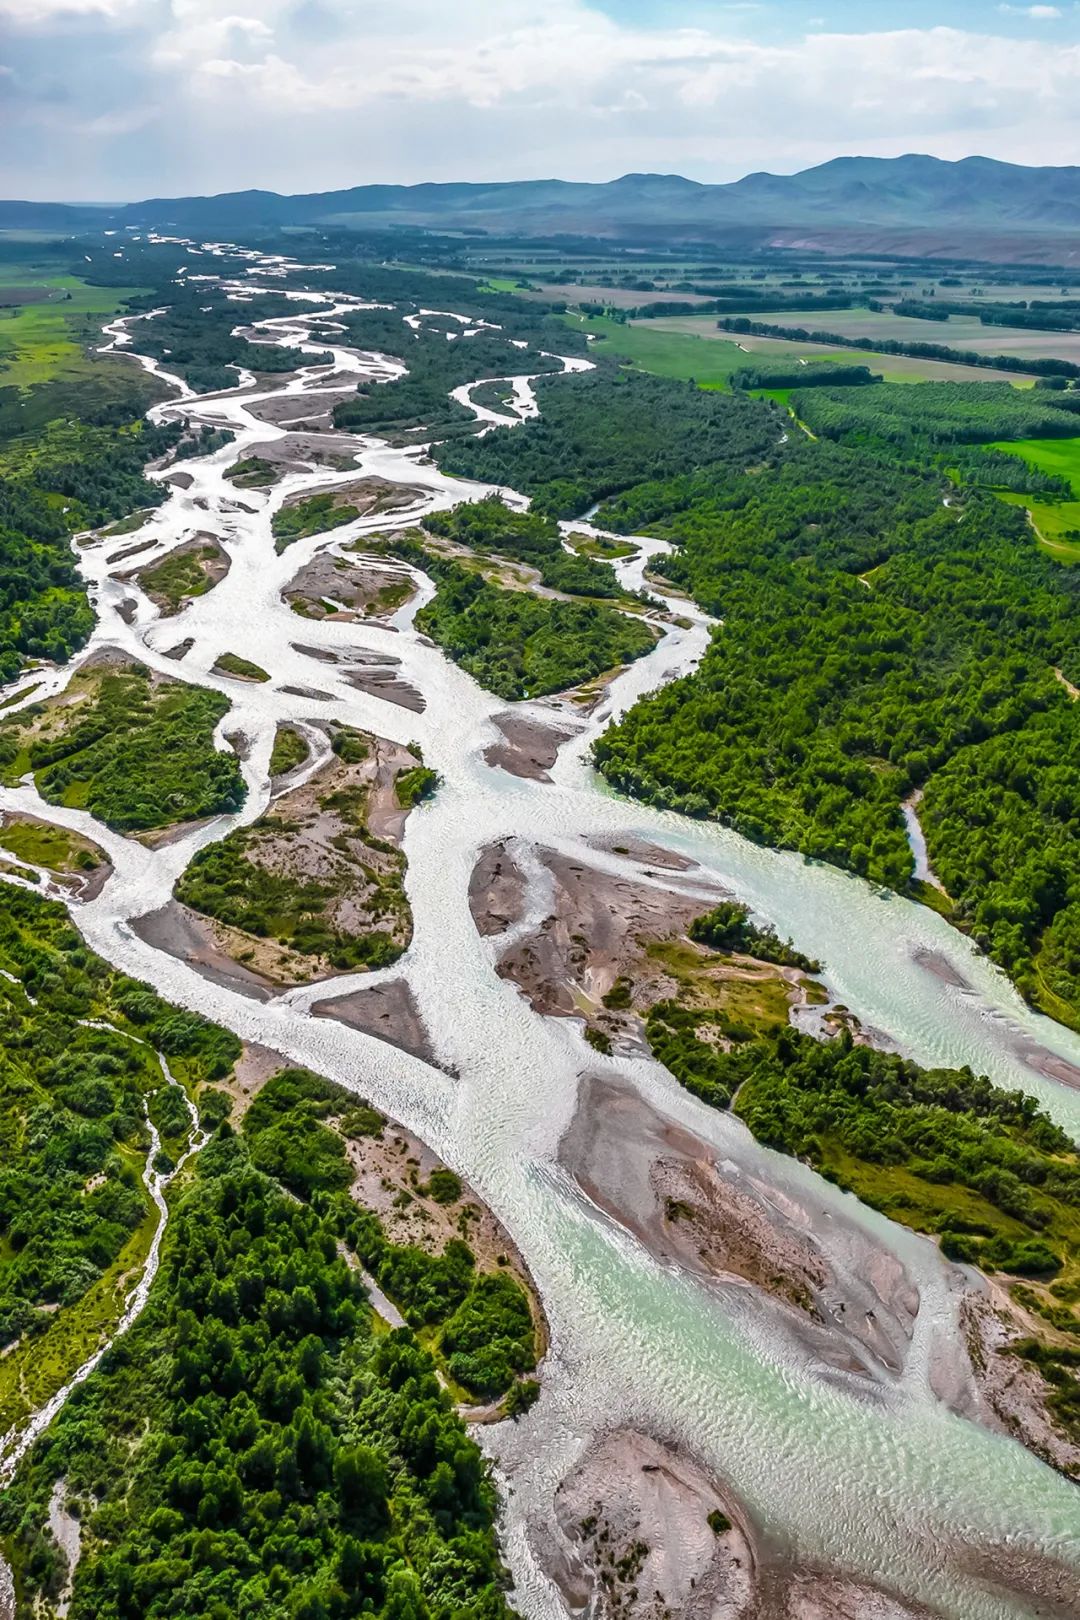 ▲ 特克斯河有着明显的辫状水系特征。摄影/樊小喆